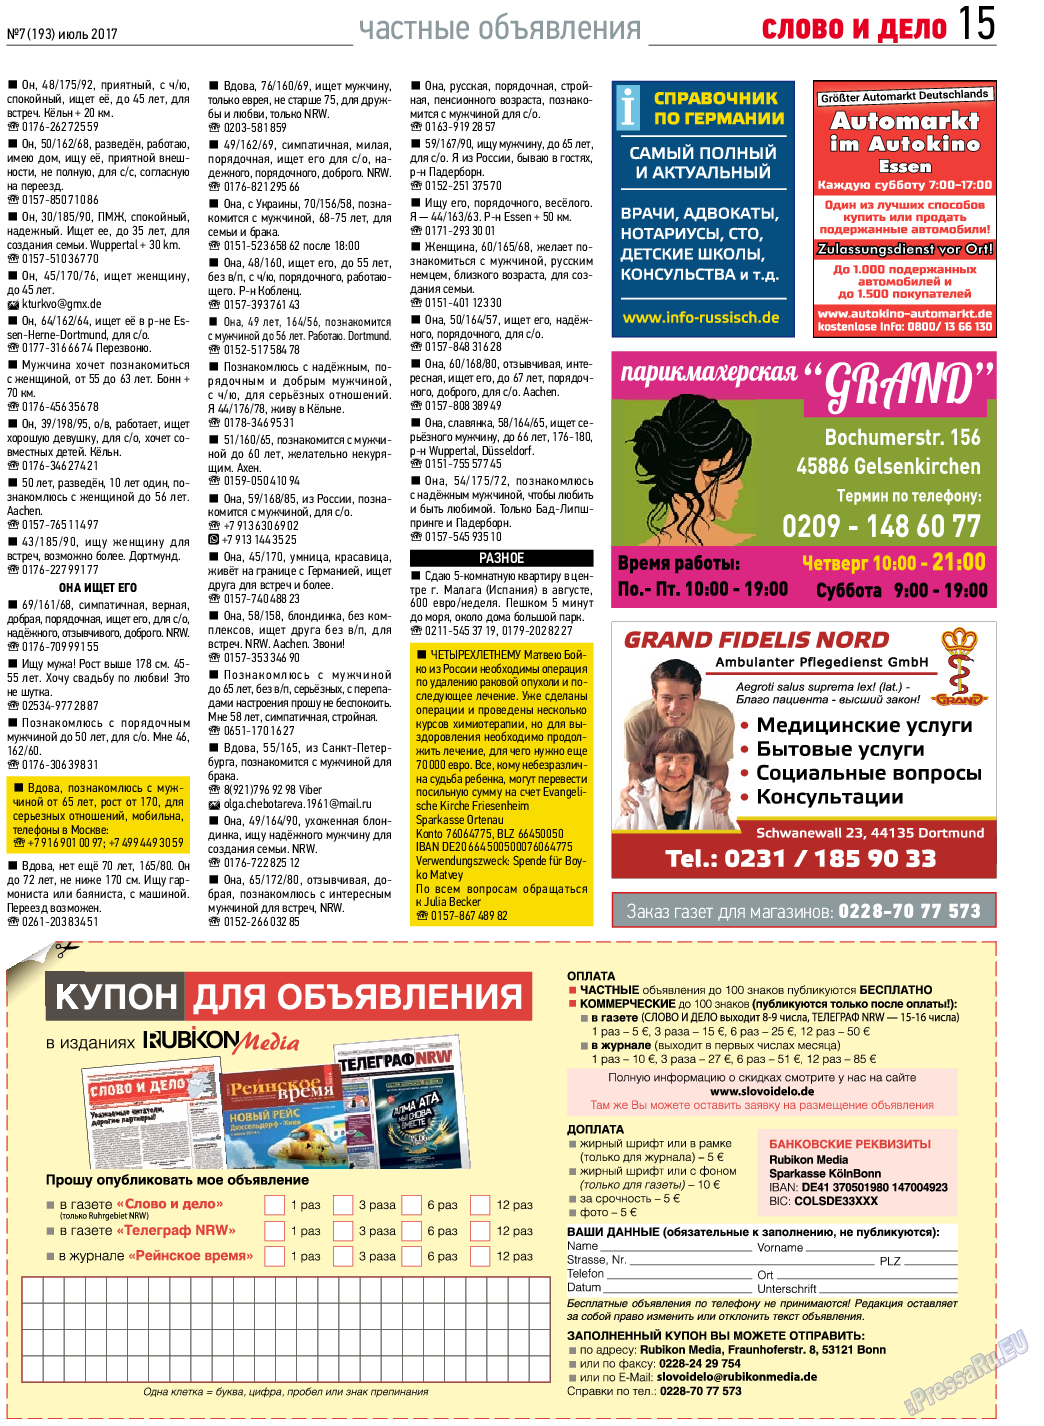 Слово и дело, газета. 2017 №7 стр.15